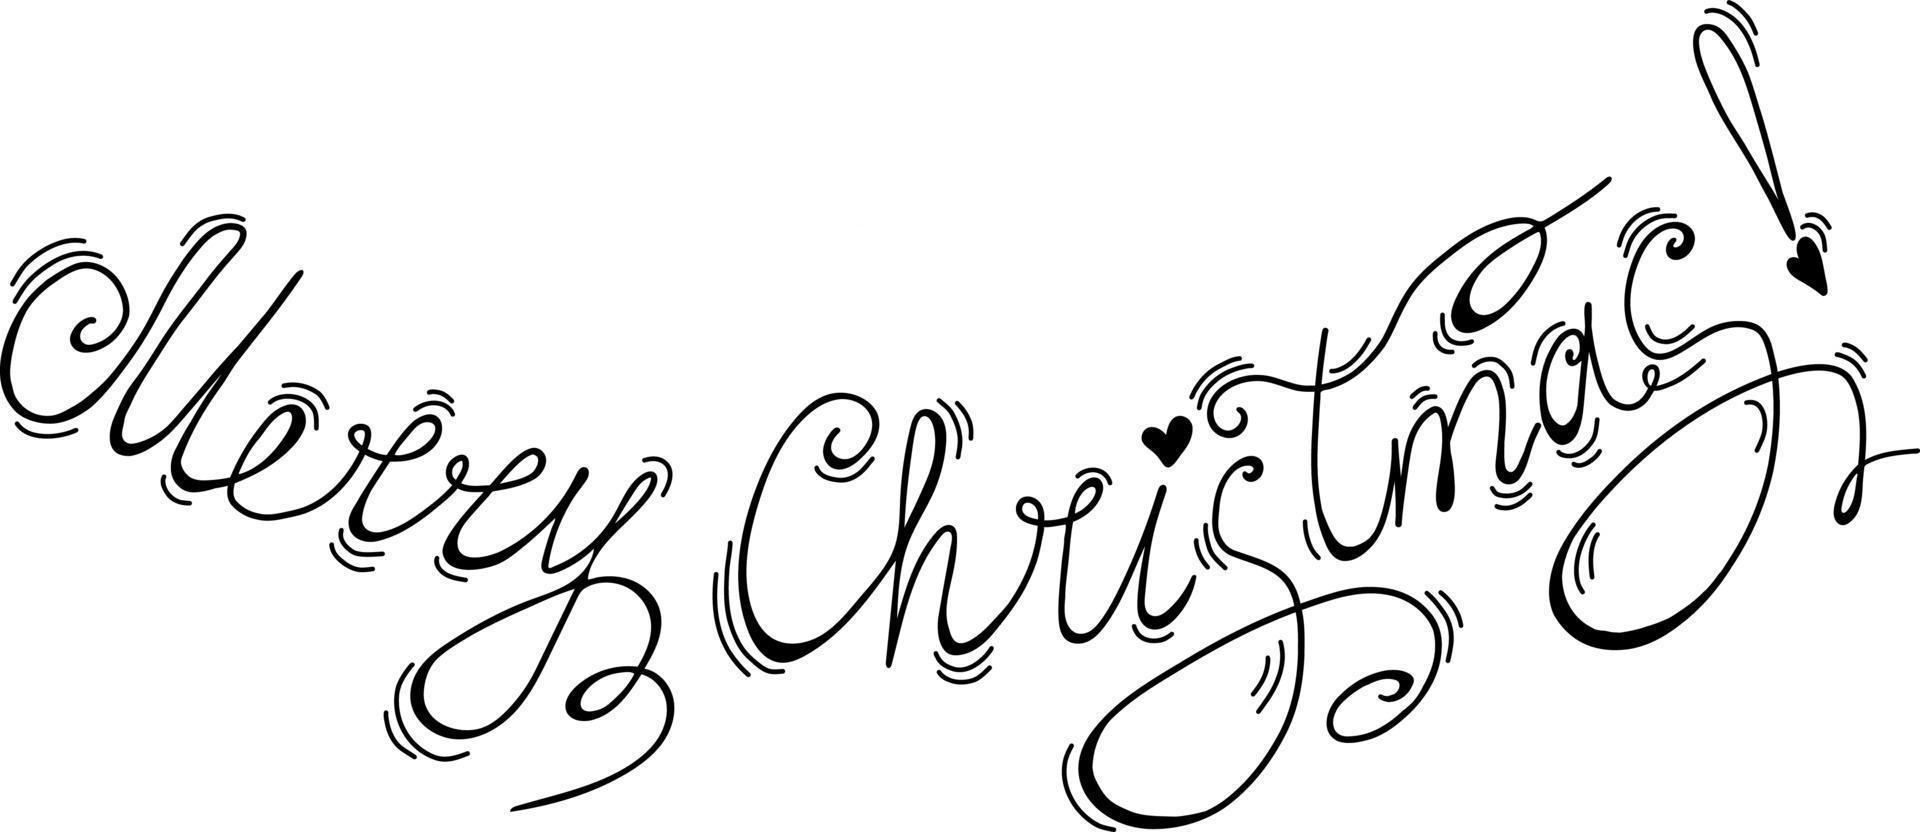 bokstäver god jul. vektor illustration. handskriven teckning